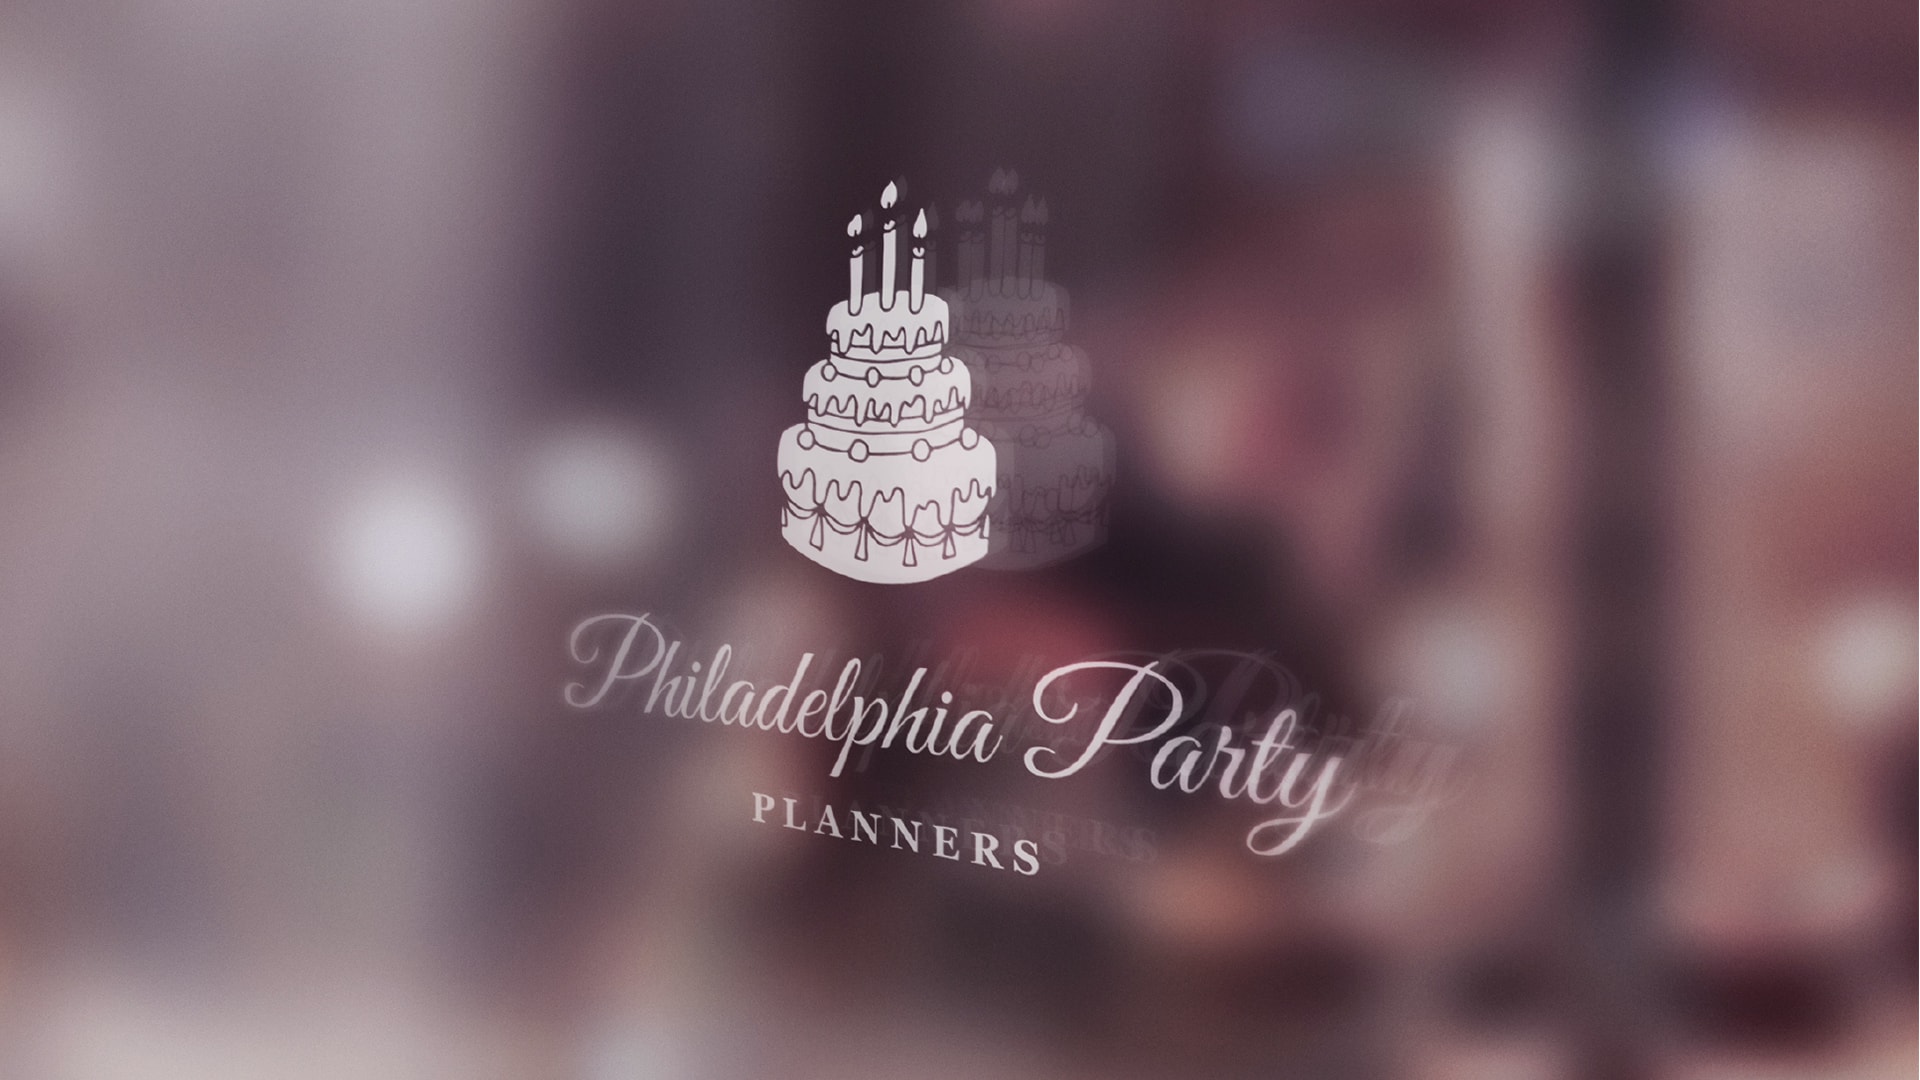 Philadelphia Party Planners